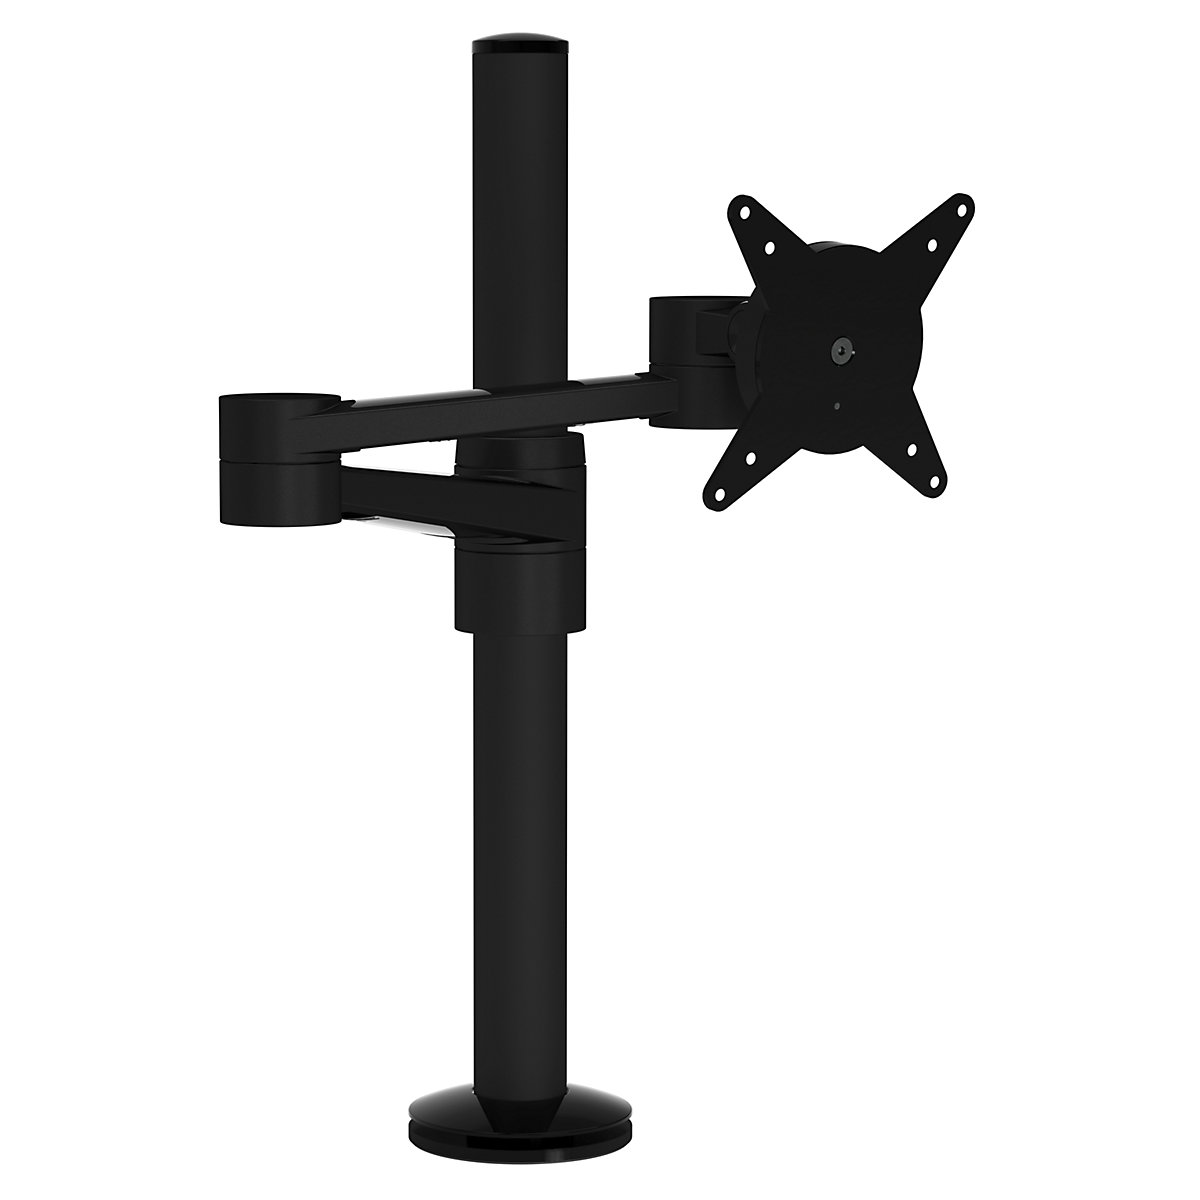 Braccio per monitor VIEWLITE – Dataflex, regolabile in altezza, due estensioni, nero-6